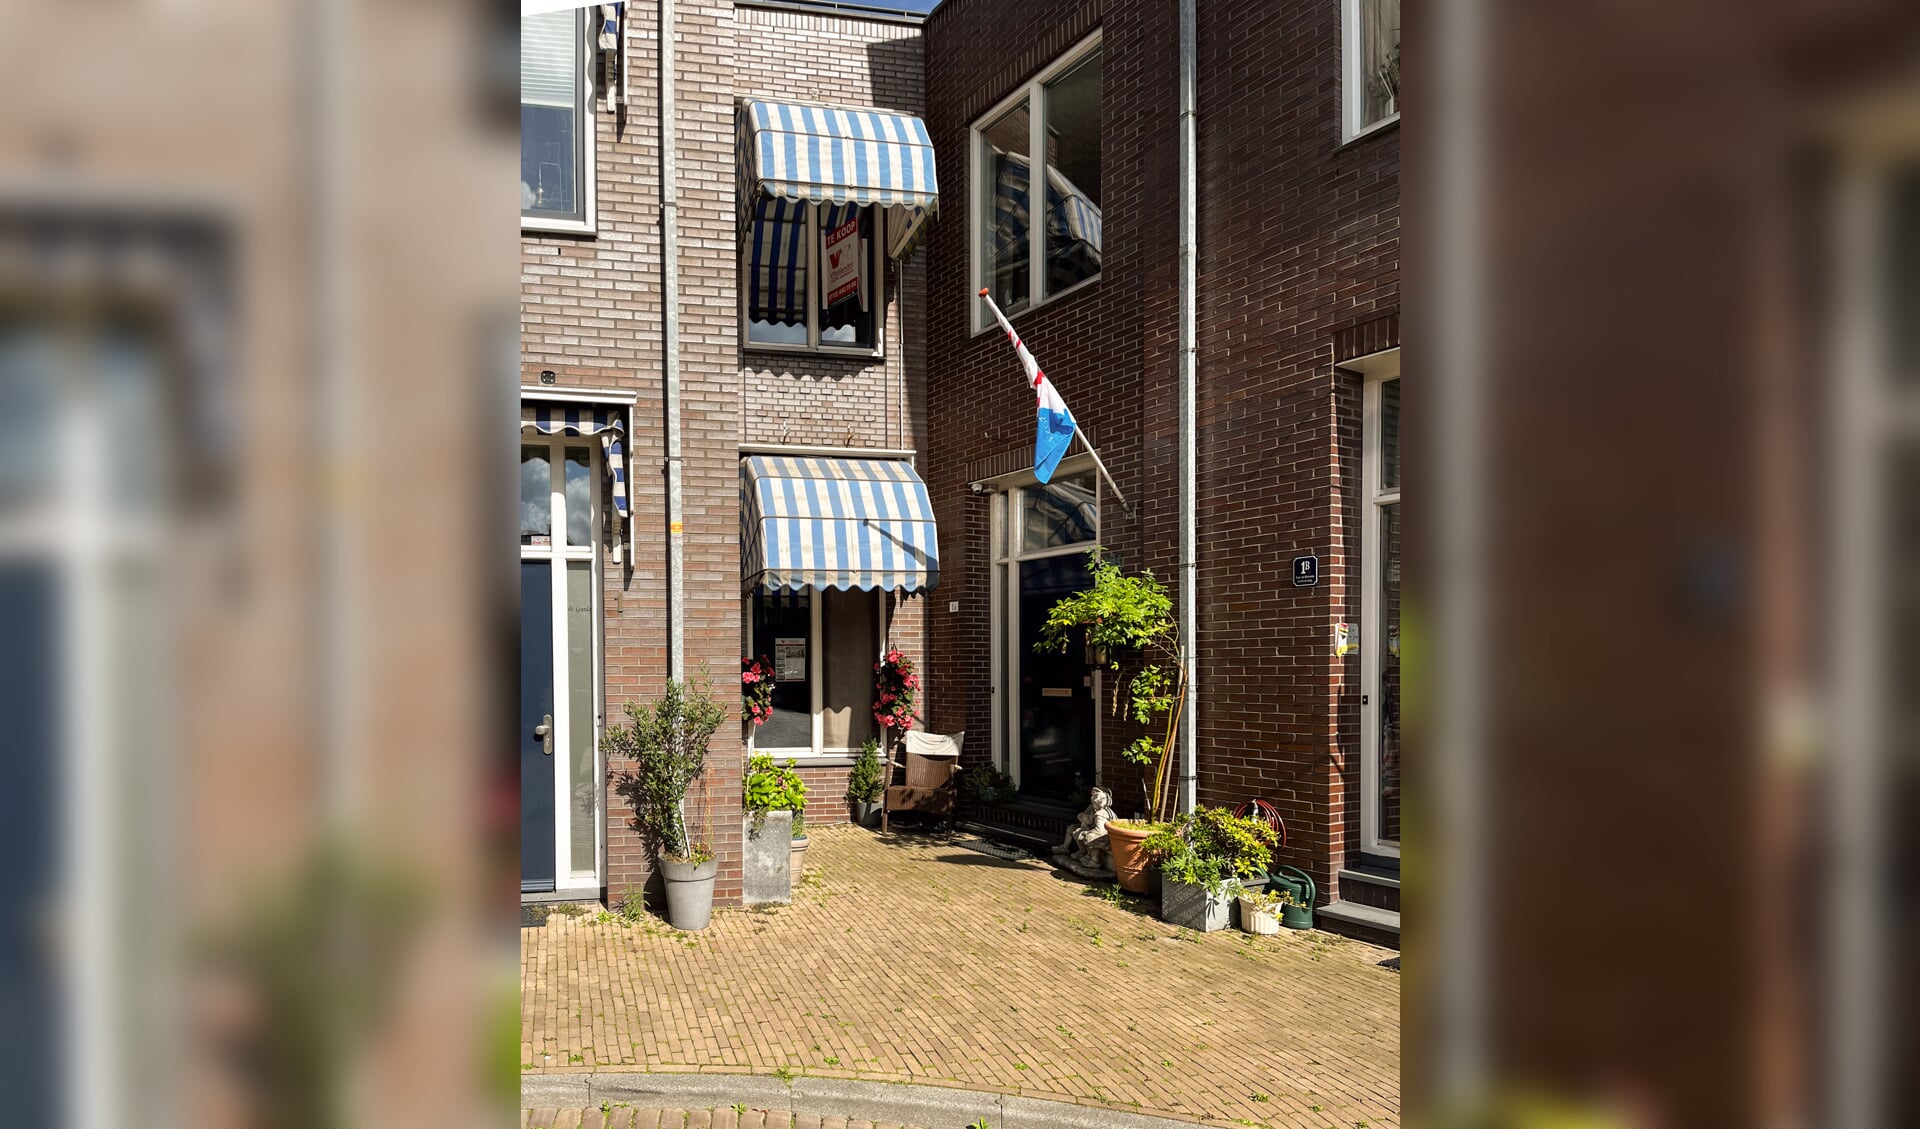 Kom zaterdag tijdens Open Huizendag dit huis aan de Maassluissedijk 1 A bekijken zonder afspraak.